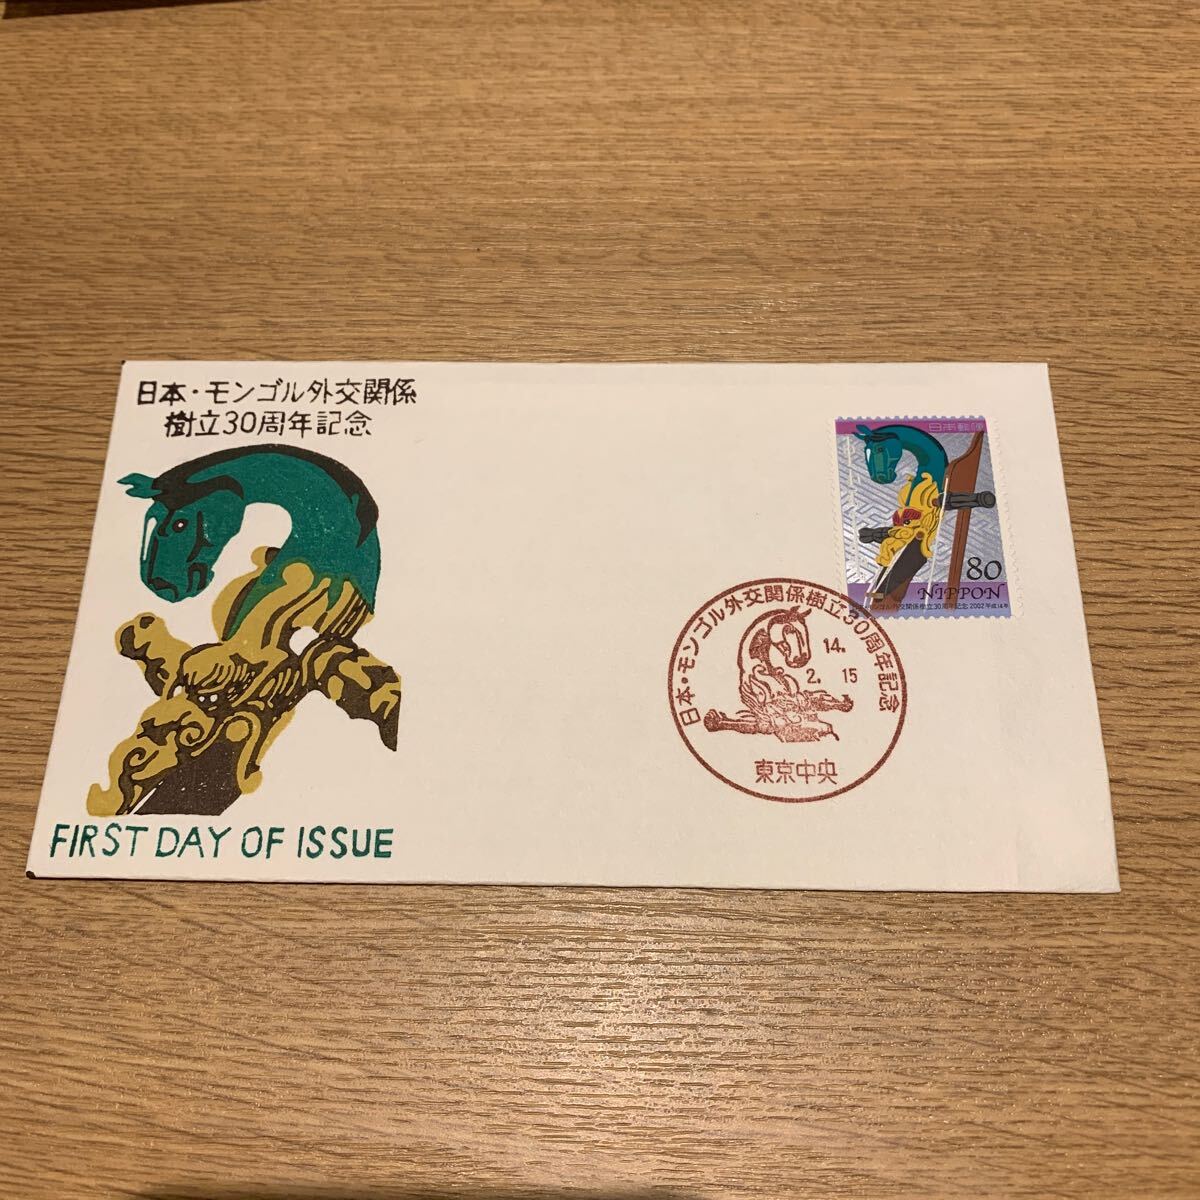 初日カバー 日本・モンゴル外交関係樹立30周年記念郵便切手 平成14年発行 松屋版の画像1